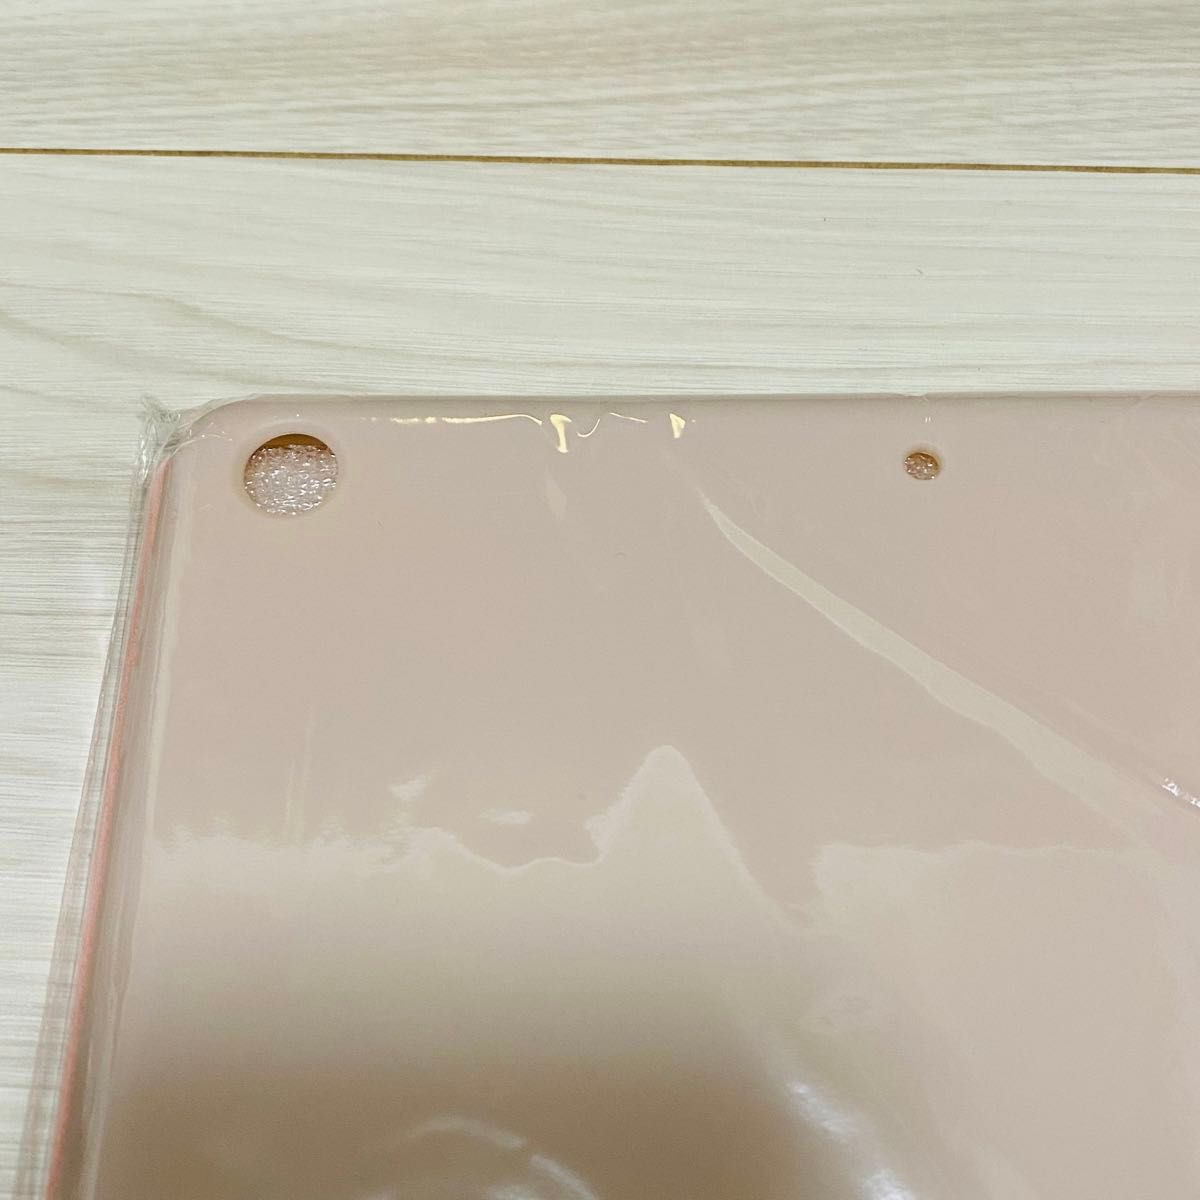 【新品未使用】iPad専用保護ケース ピンク タッチペン付き